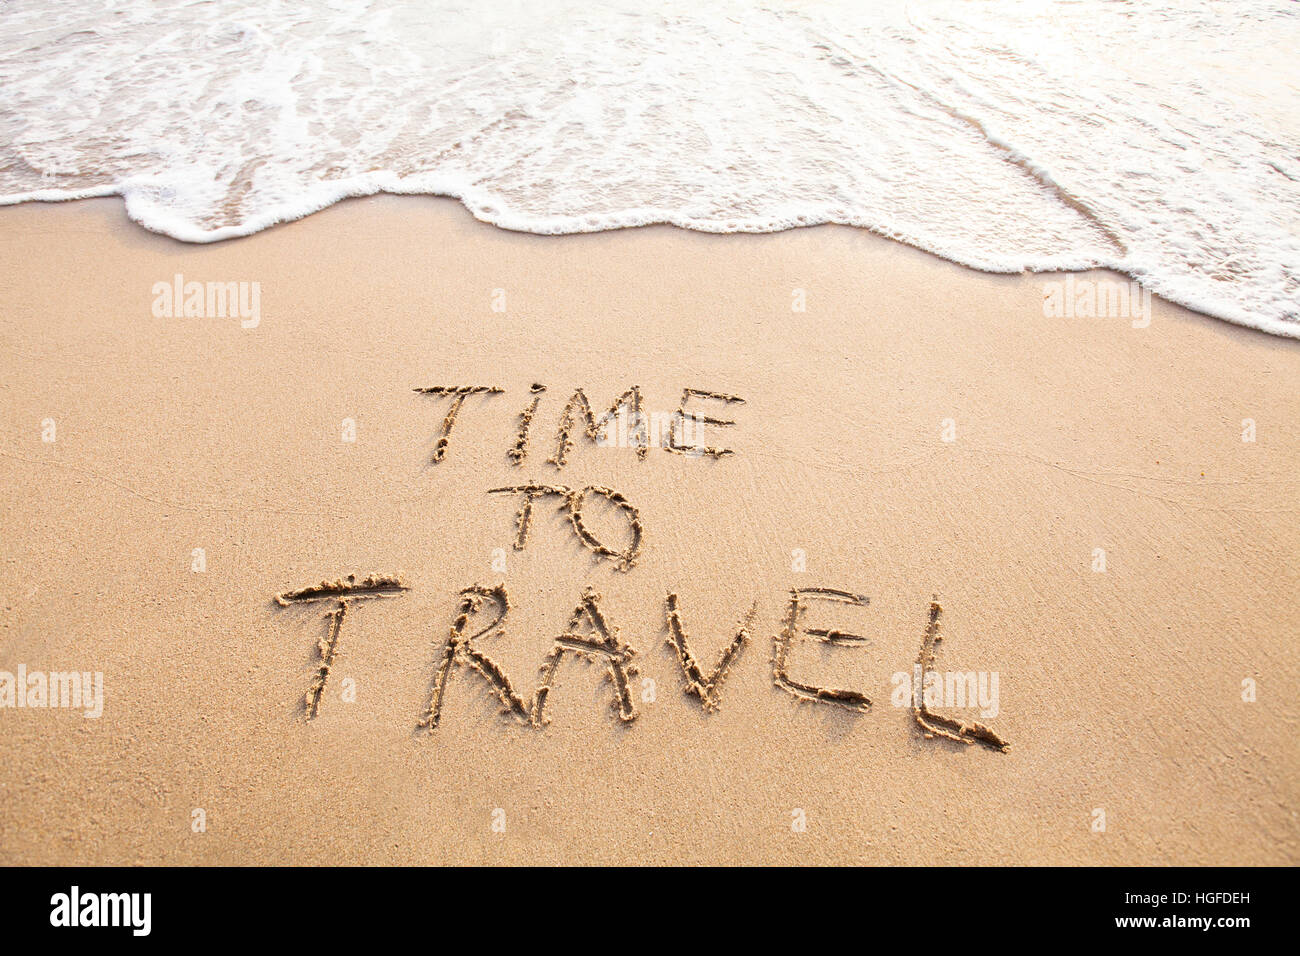 Le temps de voyage, texte concept tirés sur la plage de sable Banque D'Images